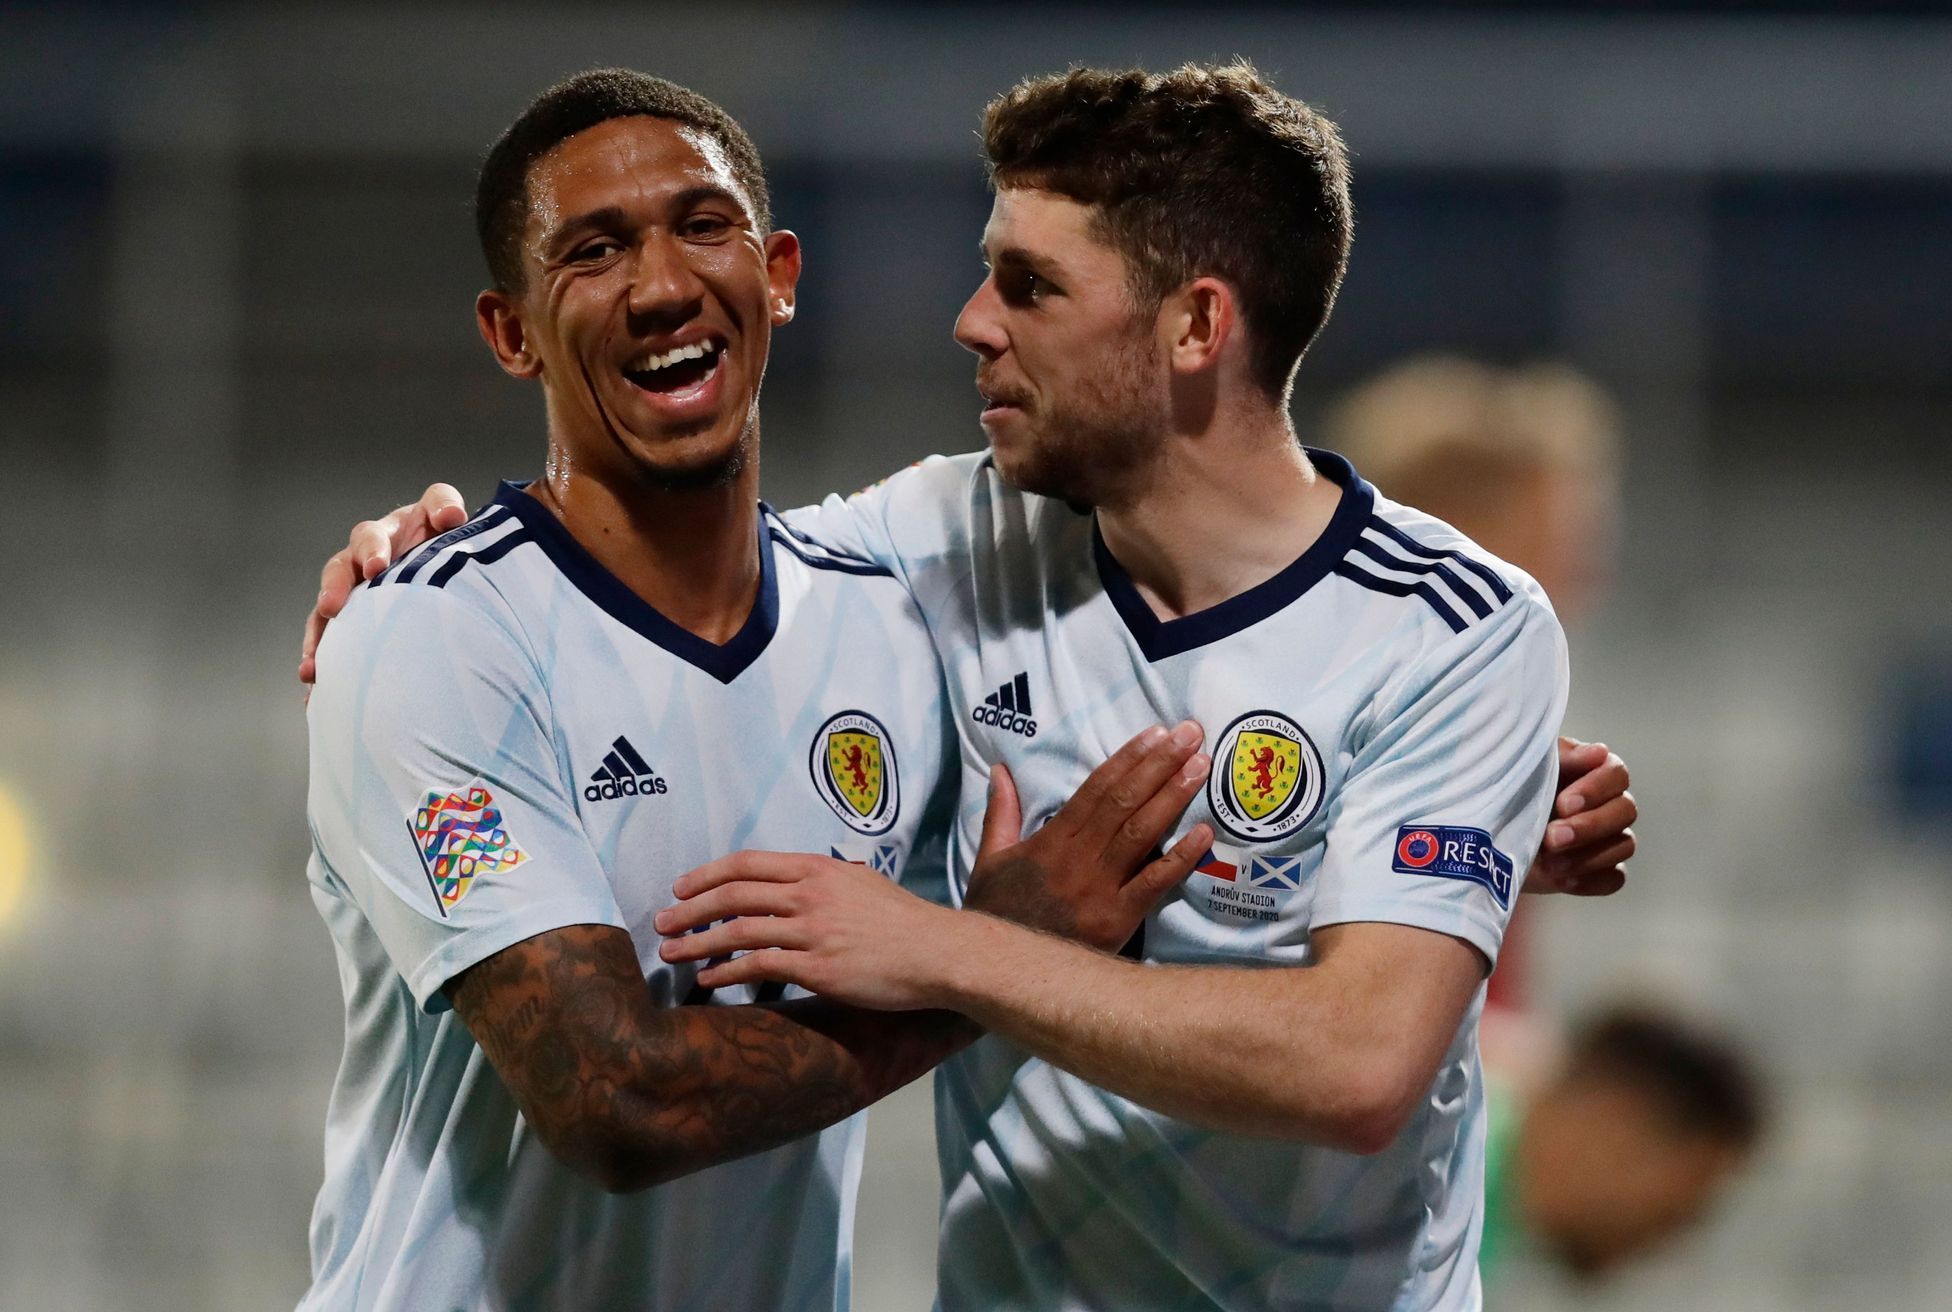 Ryan Christie a Liam Palmer slaví gól v zápase Ligy národů Česko - Skotsko